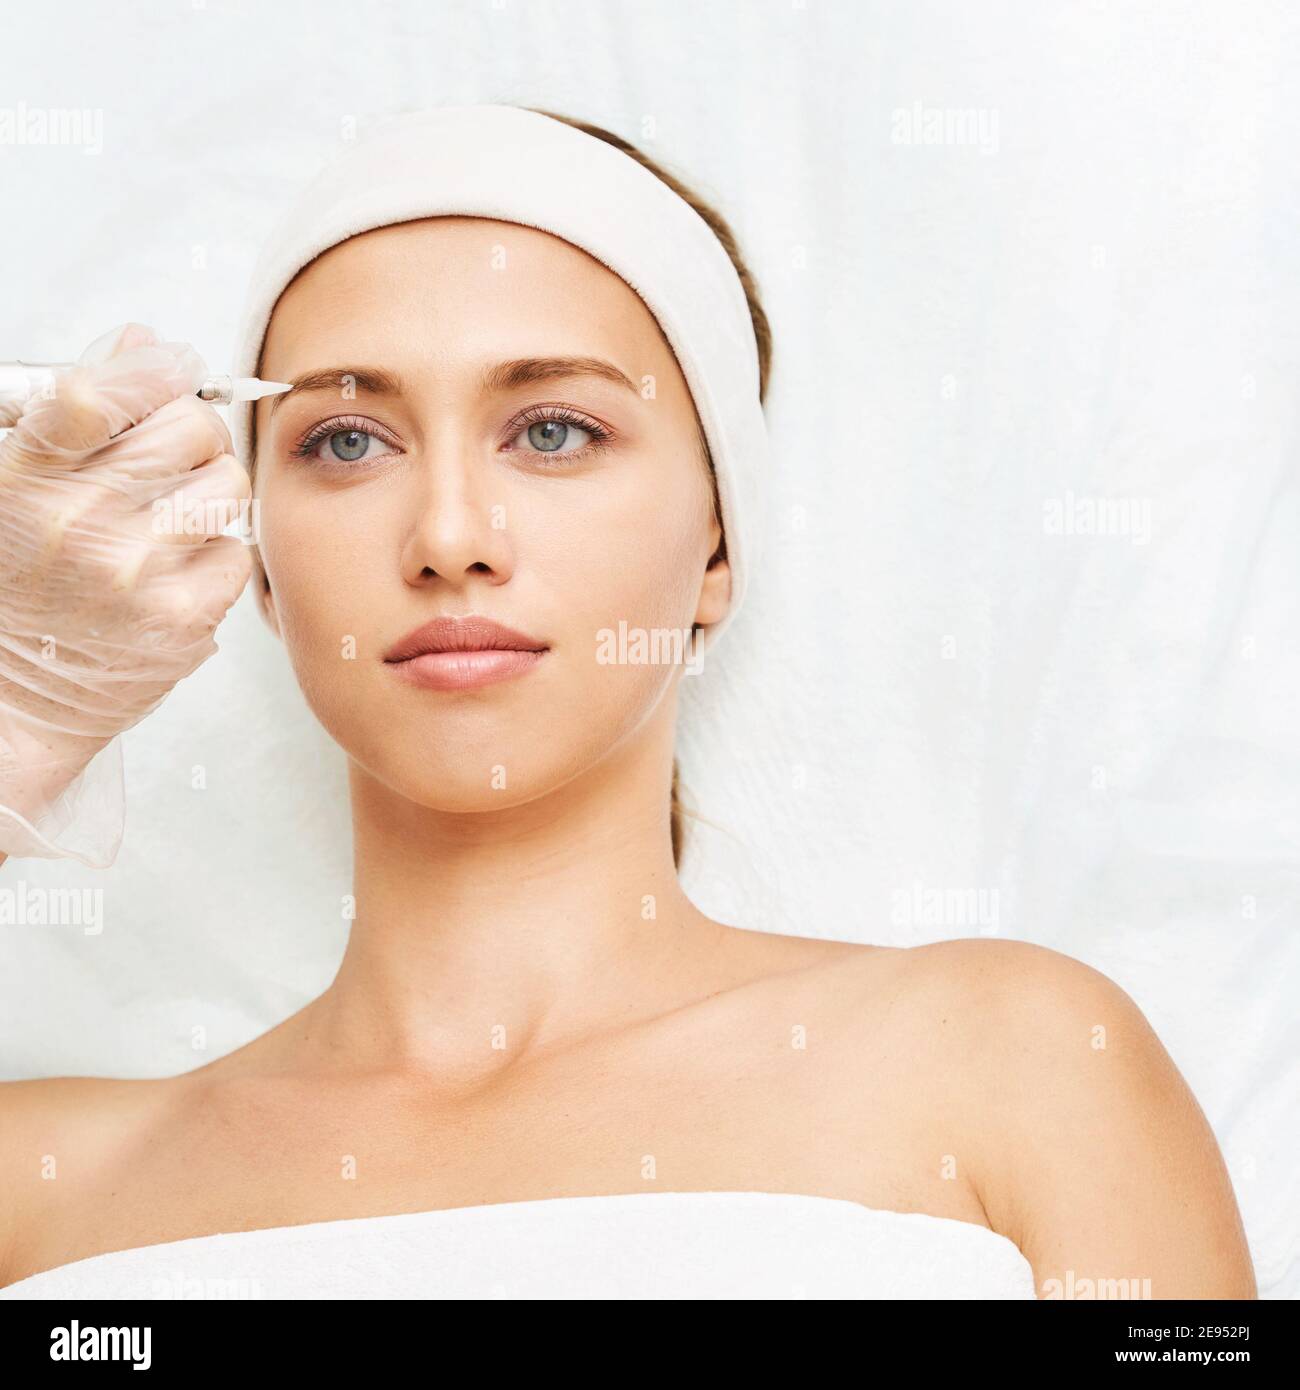 Dauerhaftes Make-up. Beauty Spa Verfahren. Junge Frau. Gesichtstattoo Stockfoto